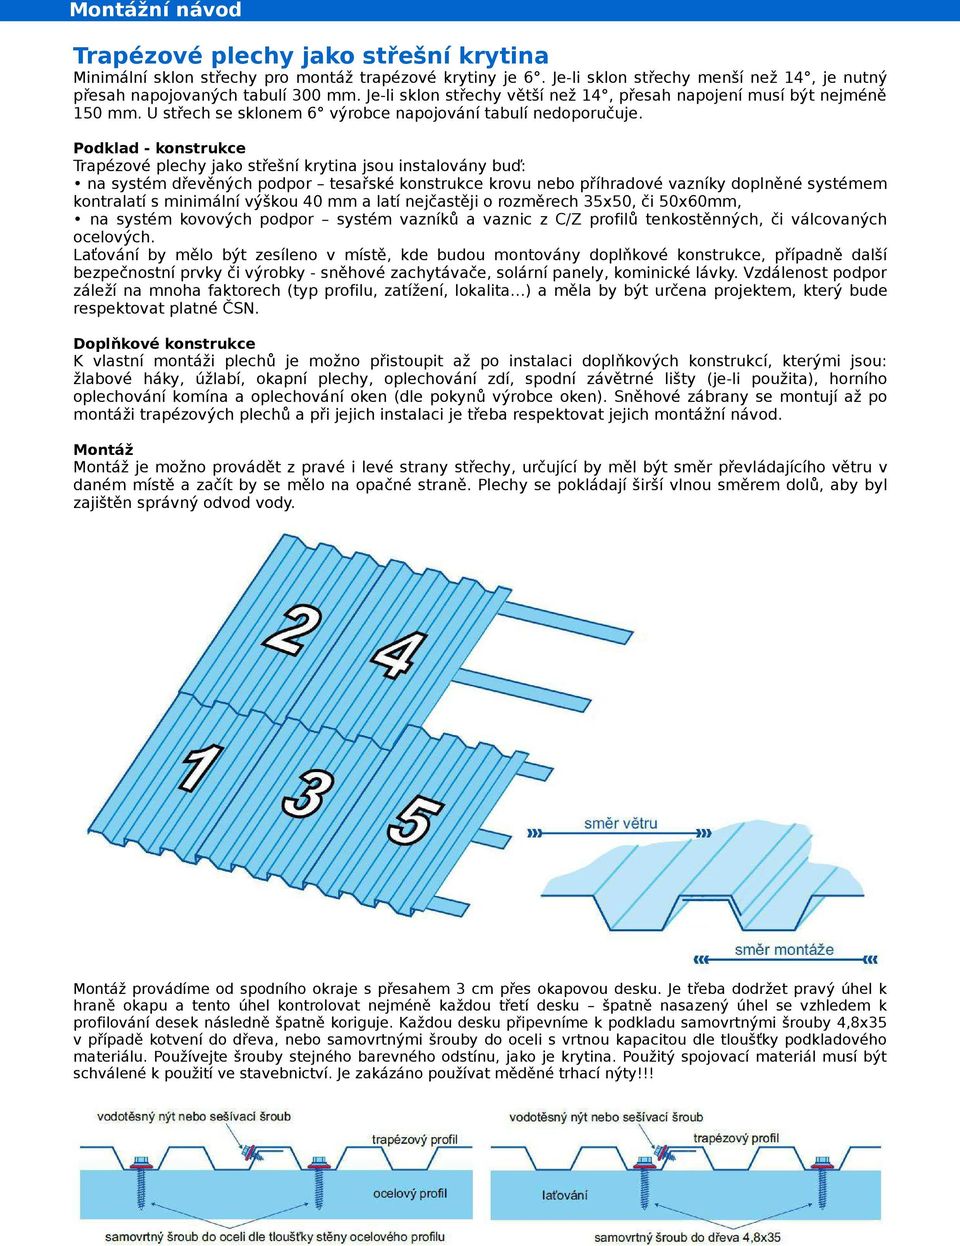 Podklad - konstrukce Trapézové plechy jako střešní krytina jsou instalovány buď: na systém dřevěných podpor tesařské konstrukce krovu nebo příhradové vazníky doplněné systémem kontralatí s minimální